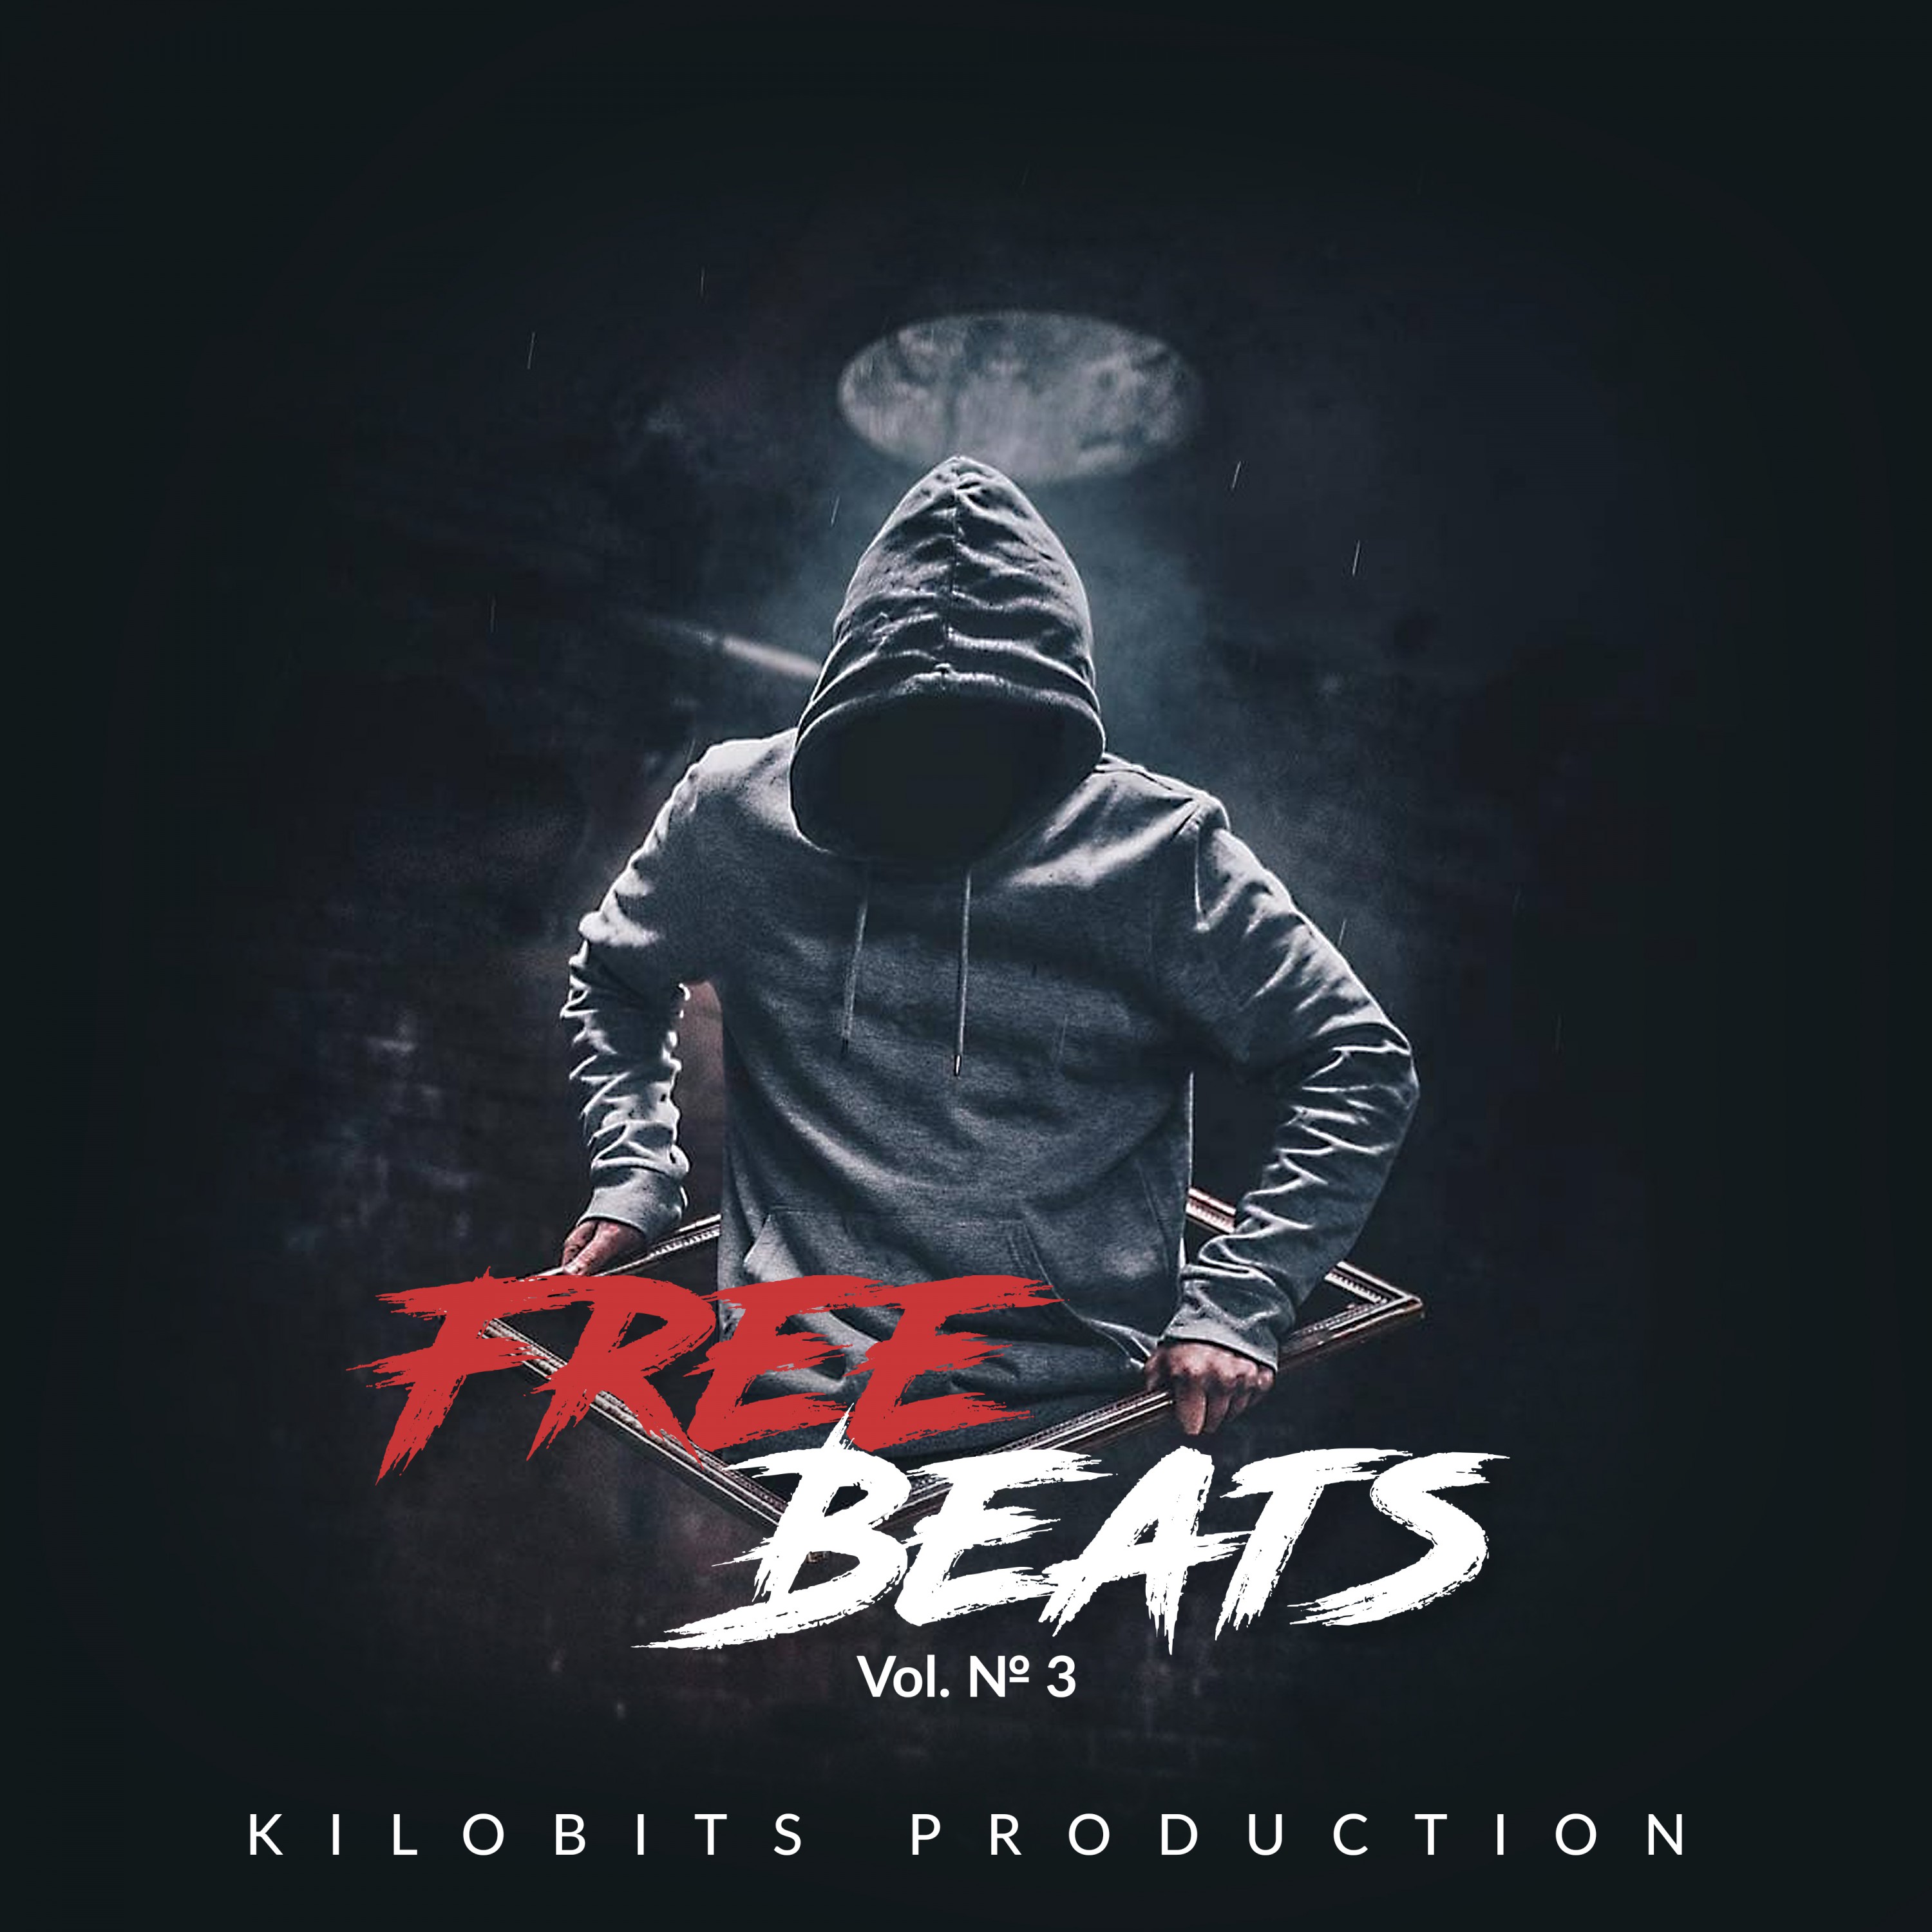 Free Beats Vol. 3